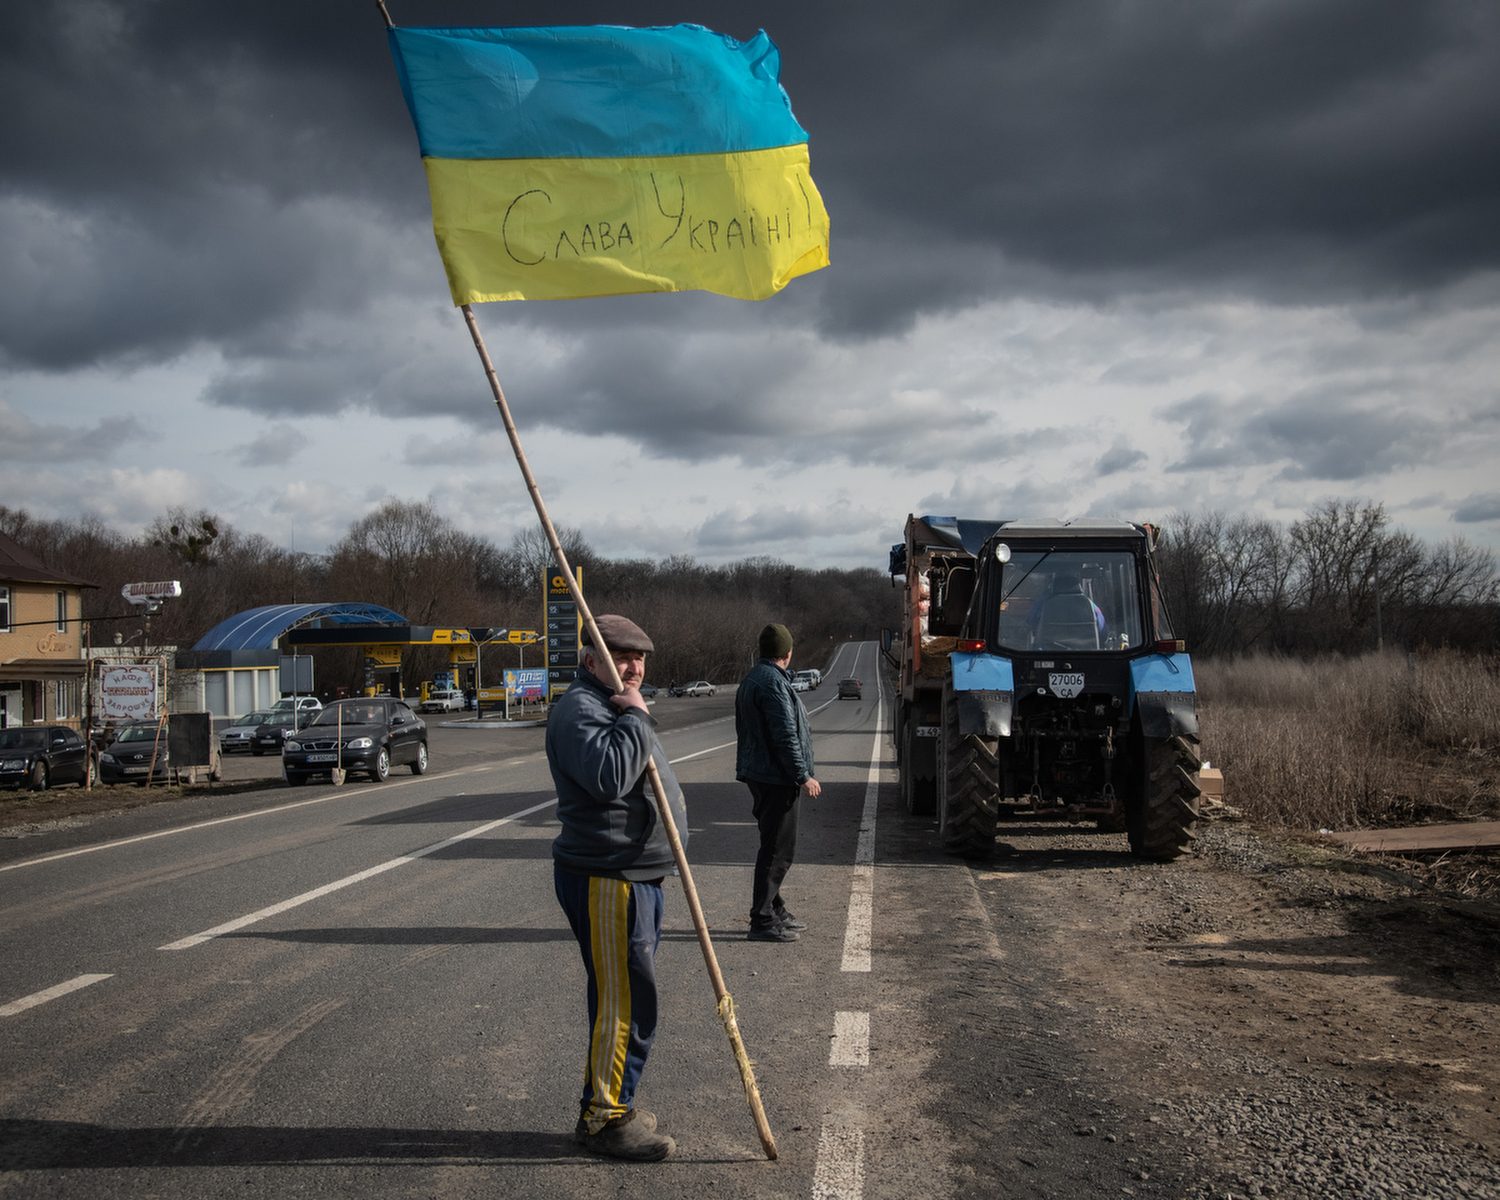 <a href="https://www.mapsimages.com/?post_type=maps_activities&p=12790">Ukraine, Civilian Resistance</a>